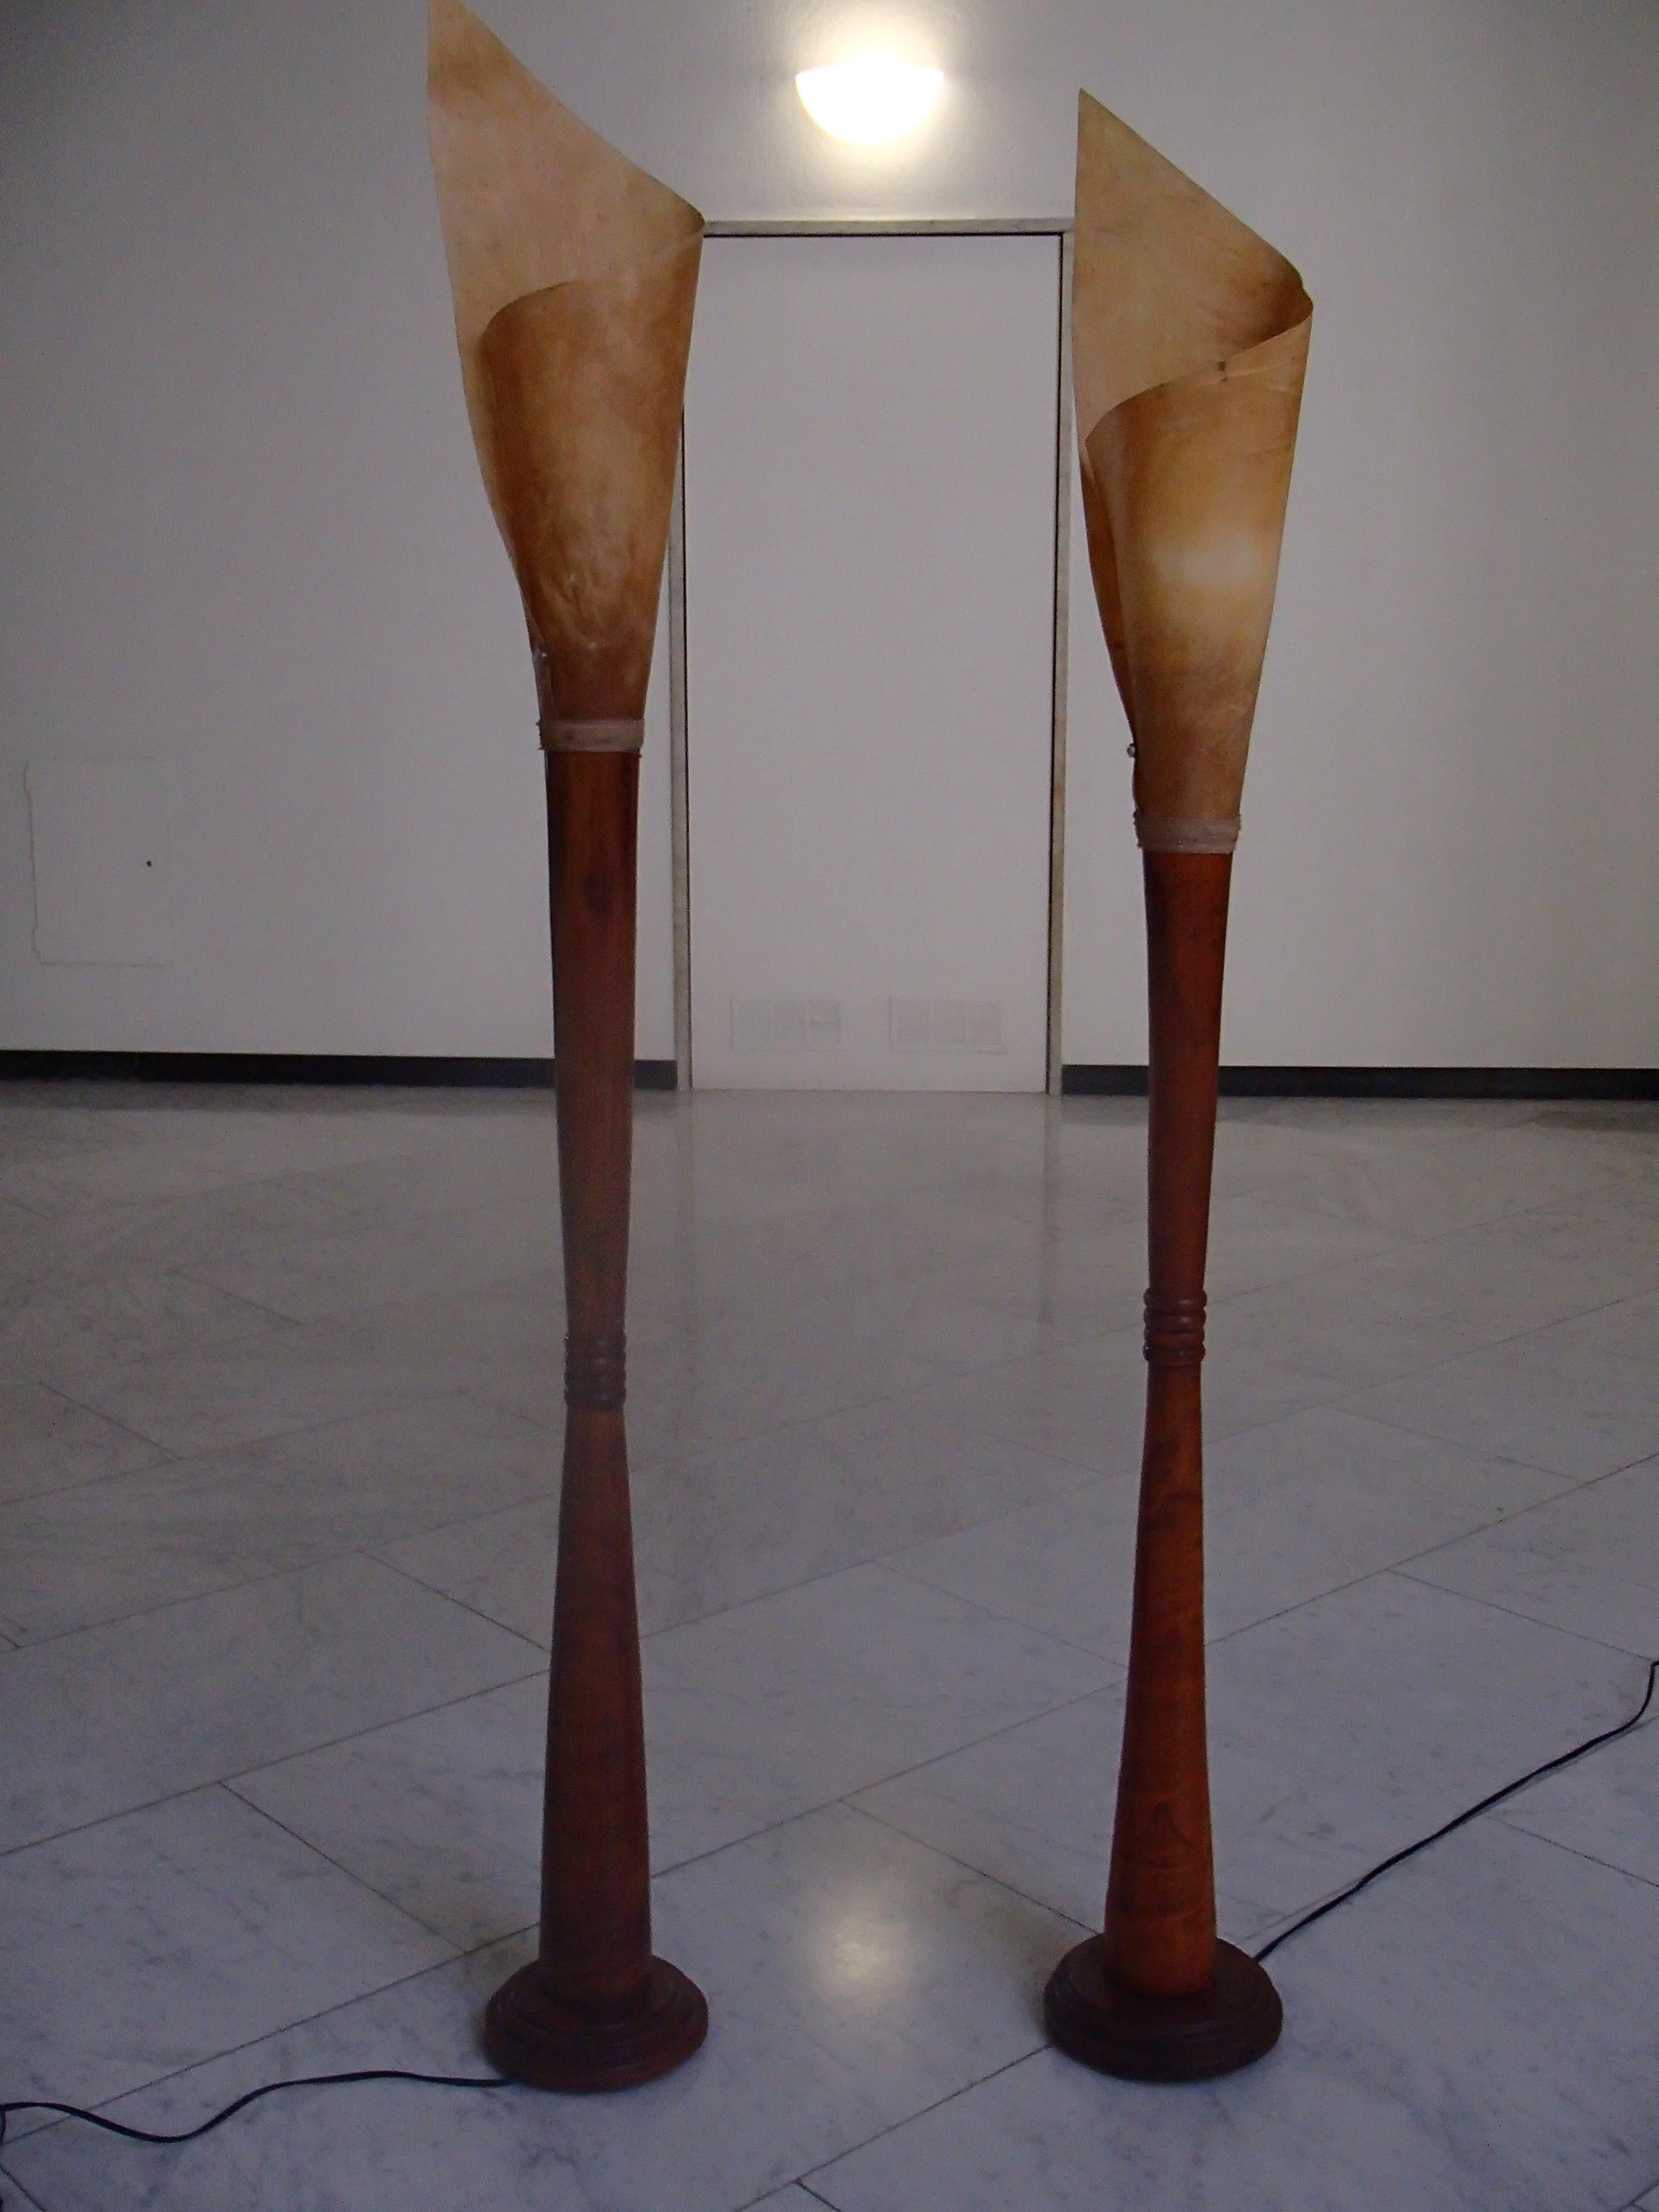 Mid-Century Modern Paar handgefertigte Stehlampen Holz und gerollt Haut Schirme. Sie sind leicht unterschiedlich, da sie handgefertigt sind. Der eine ist 180 cm, der andere 175 cm hoch.